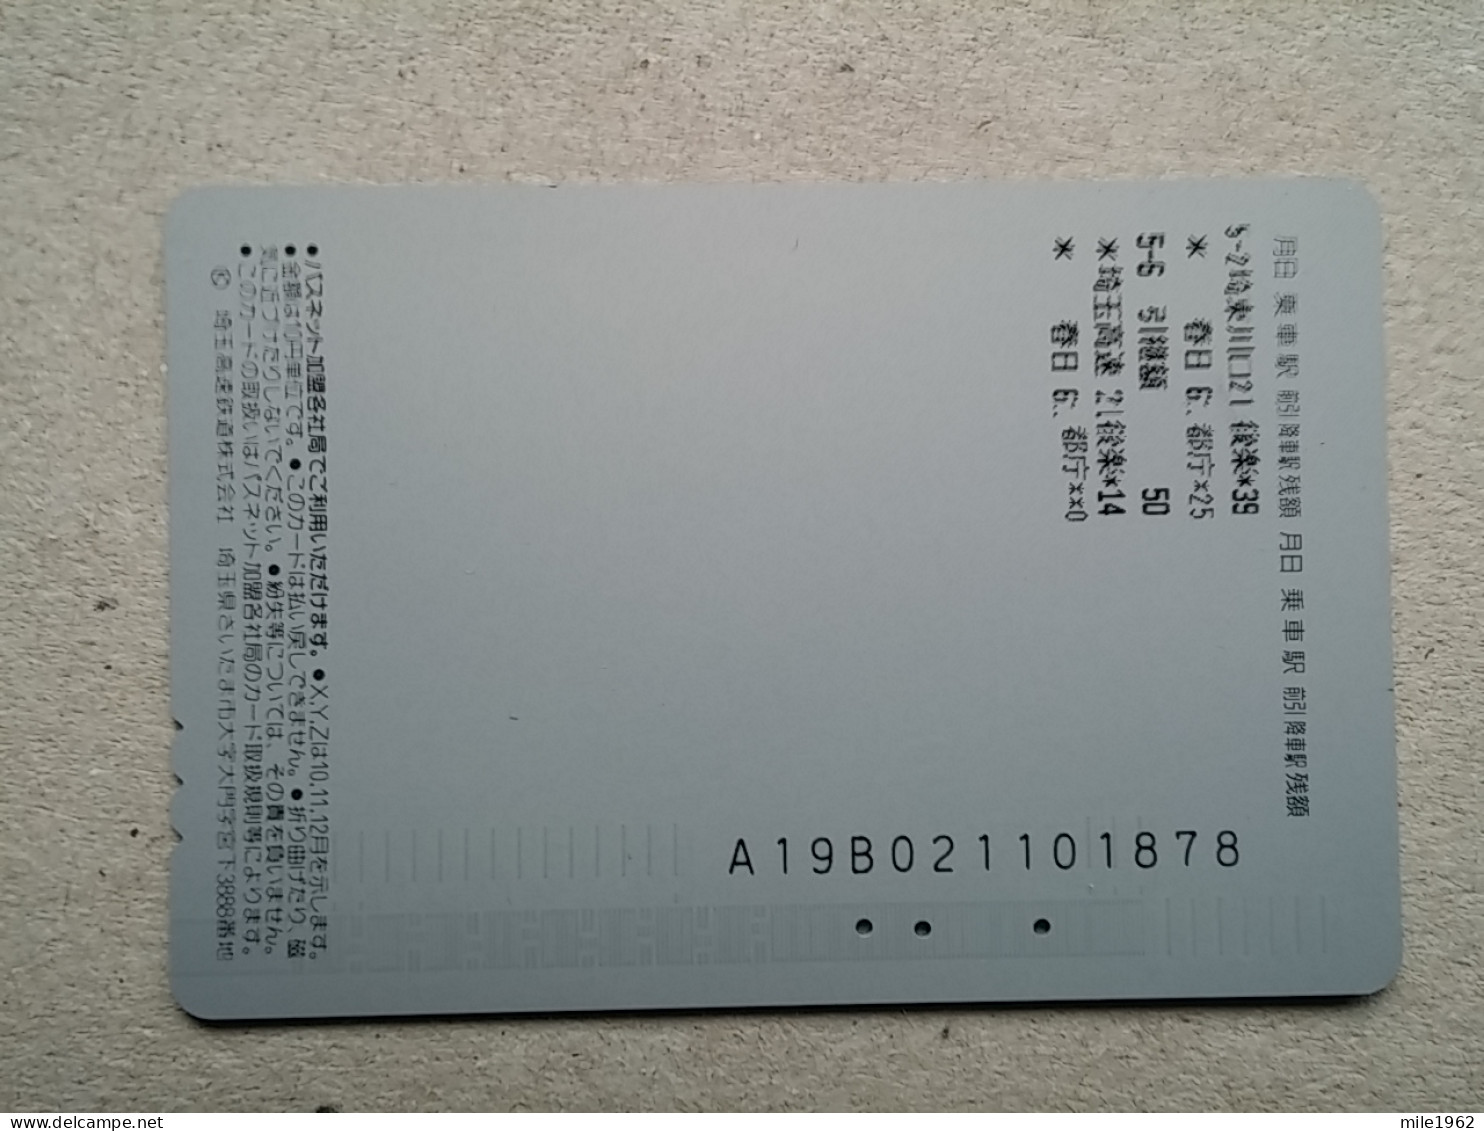 T-617 - JAPAN, Japon, Nipon, Carte Prepayee, Prepaid Card, CARD, RAILWAY, TRAIN, CHEMIN DE FER - Trains